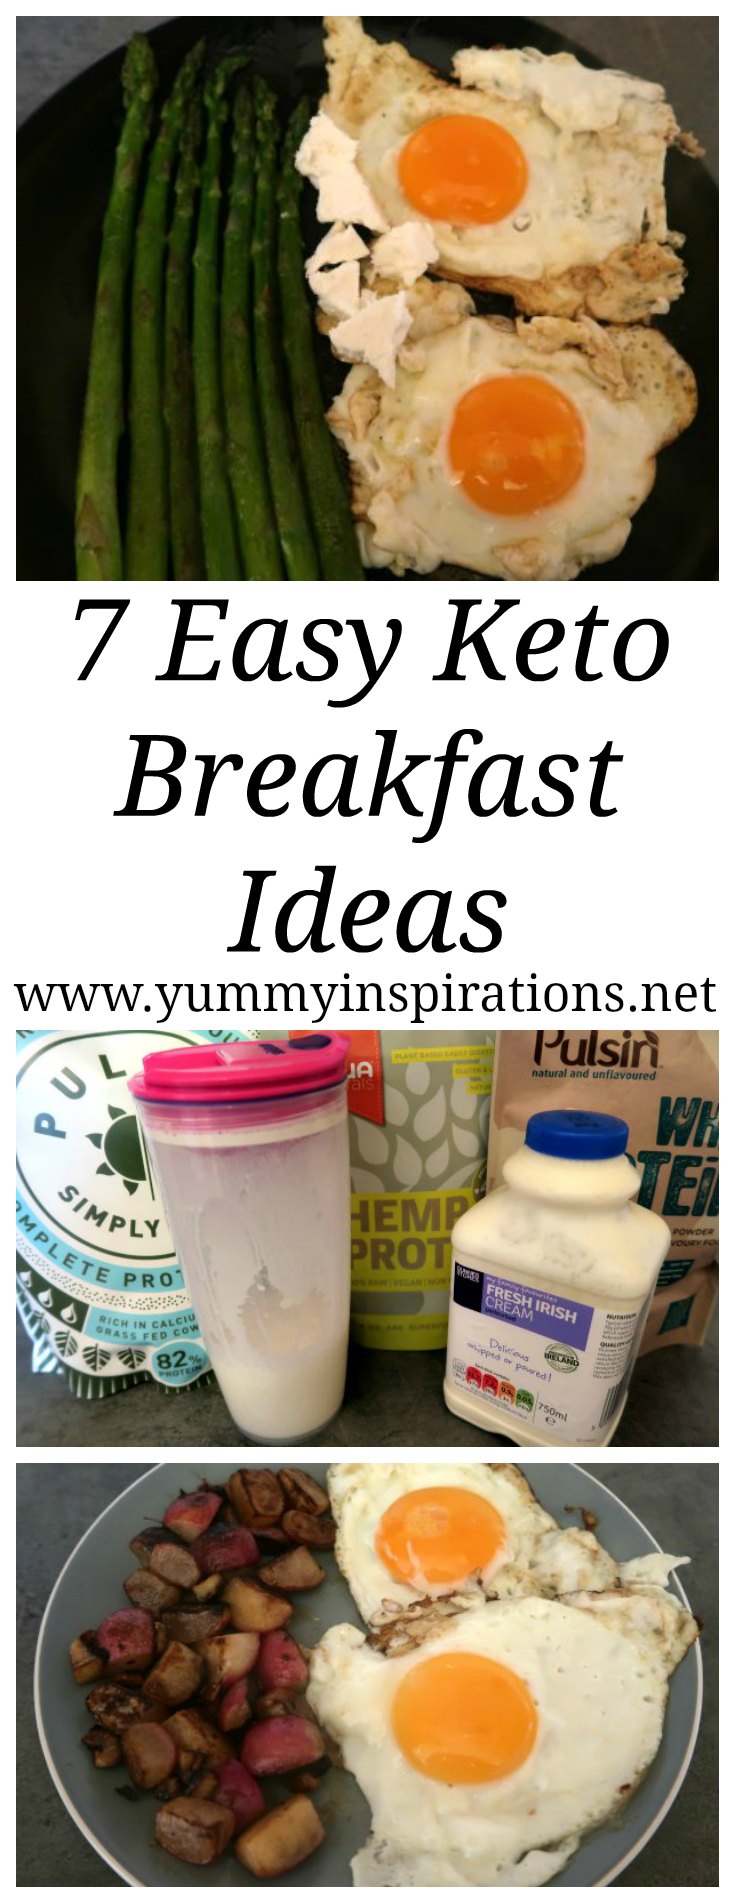 7 Easy Keto Breakfast Ideas - Low Carb \u0026 Ketogenic Diet Breakfasts